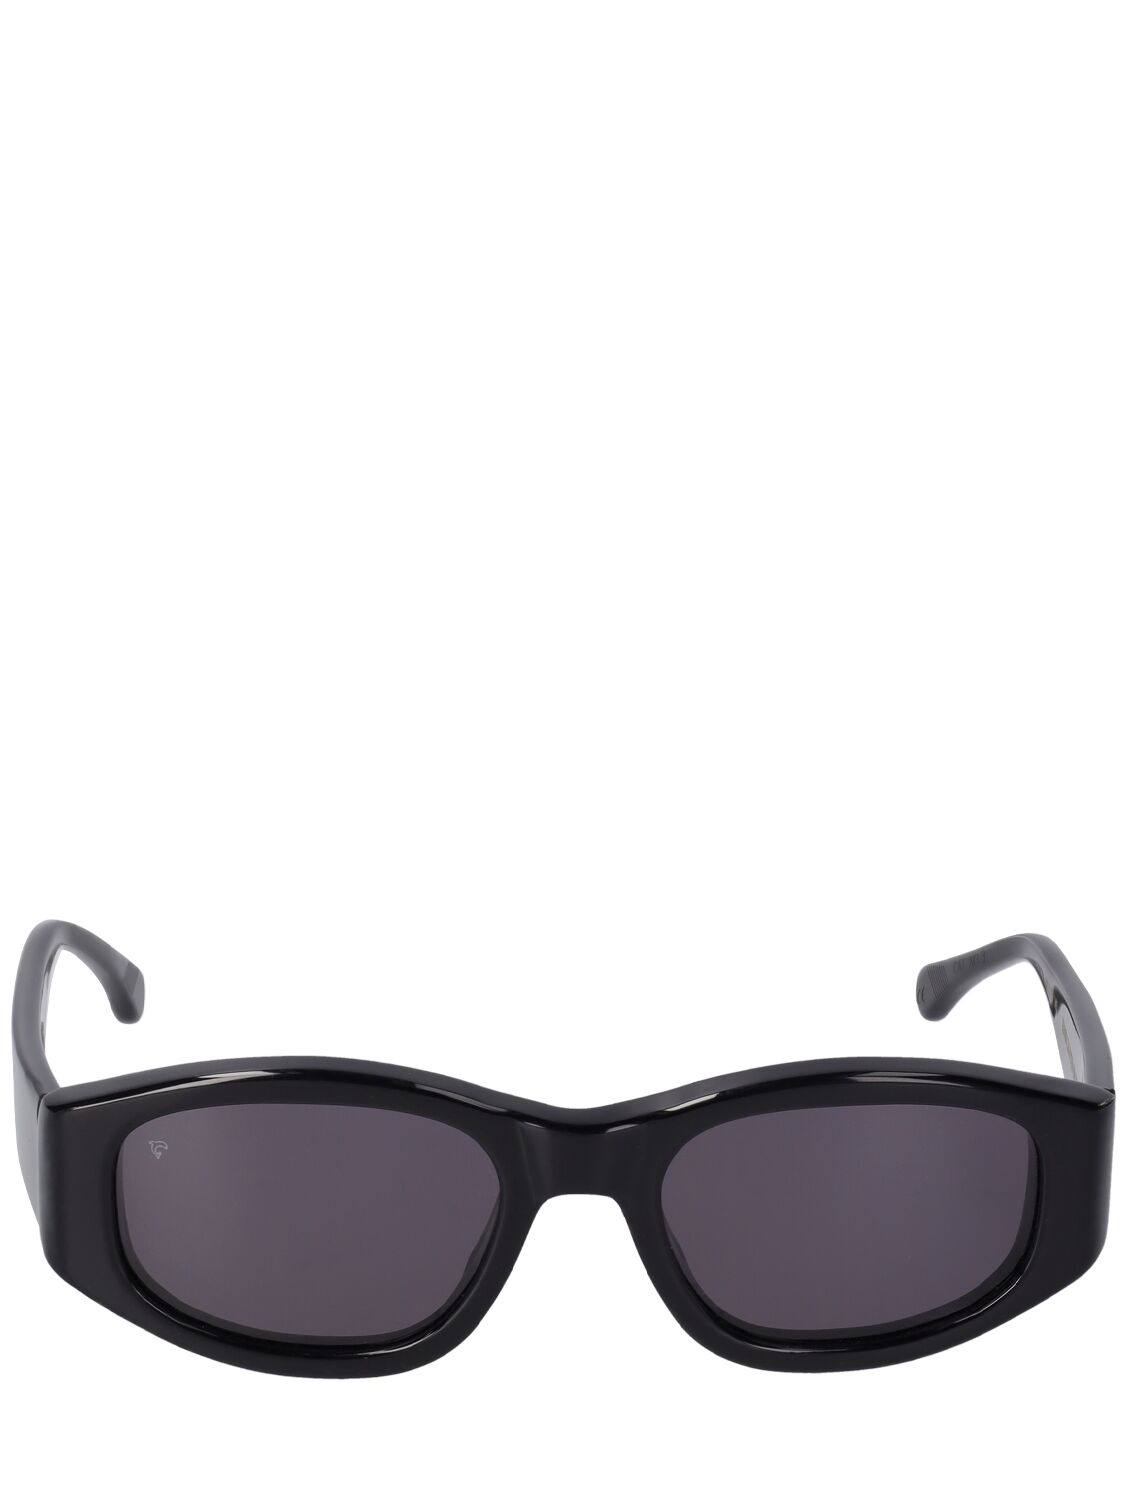 Image of Nove Squared Acetate Sunglasses